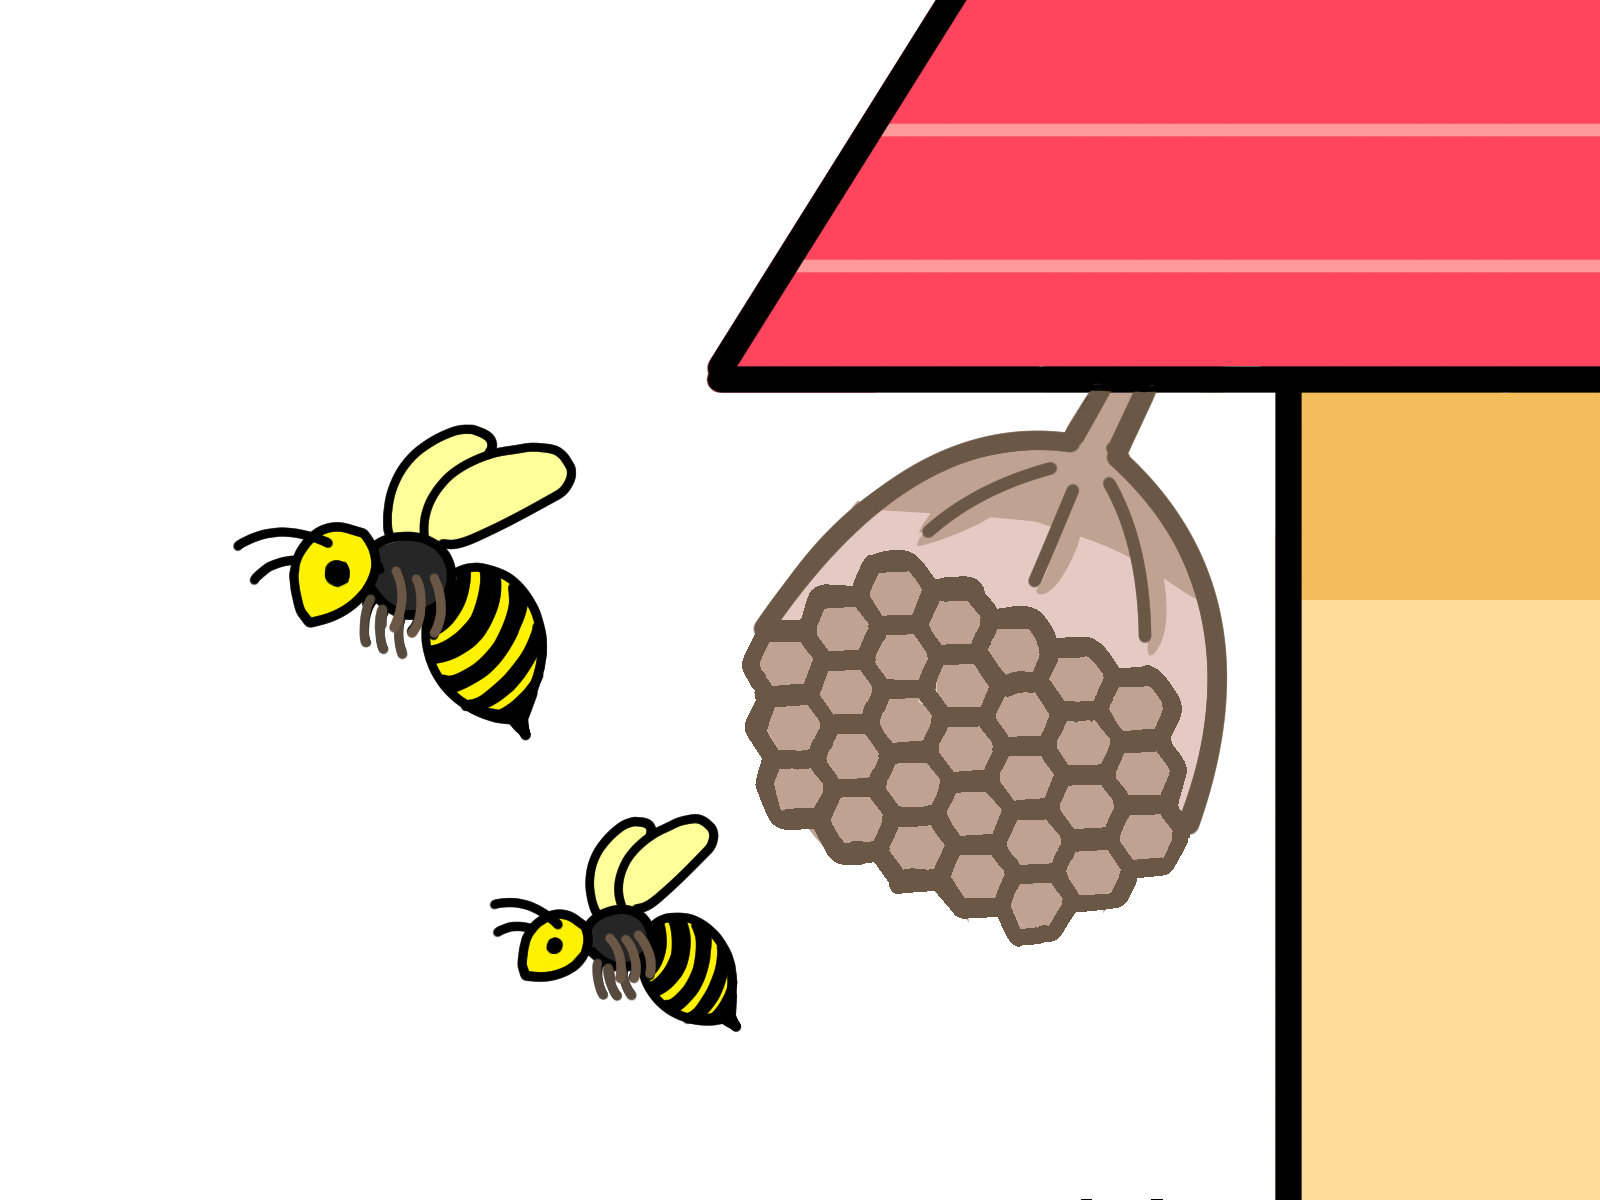 ハチ駆除